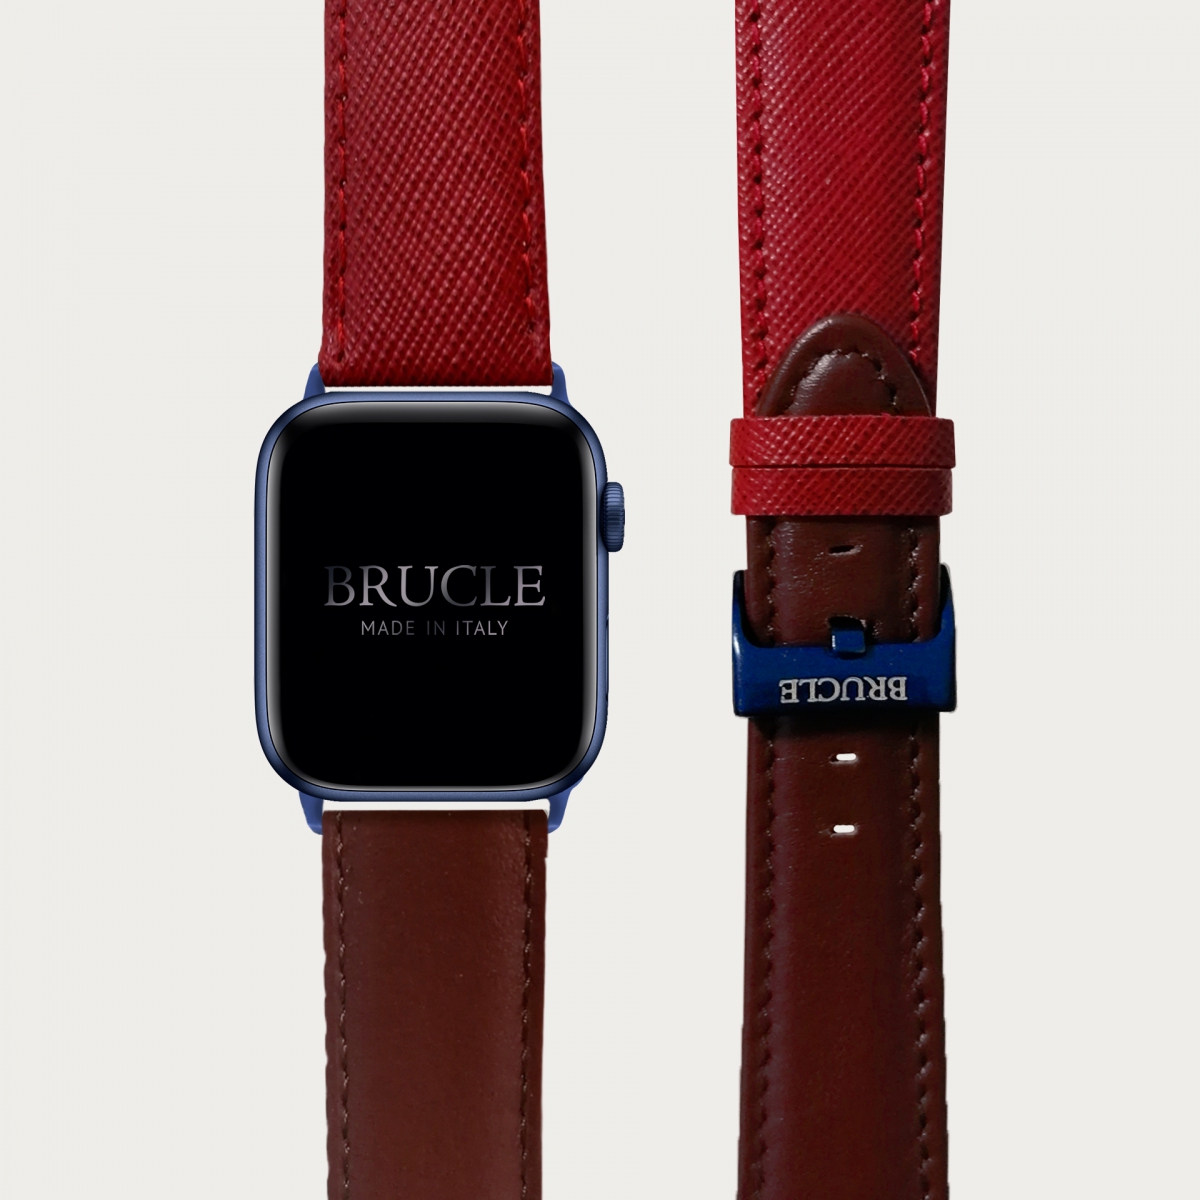 BRUCLE Cinturino bicolor in pelle stampata per orologio, Apple Watch e Samsung Galaxy Watch, saffiano rosso e marrone inglese